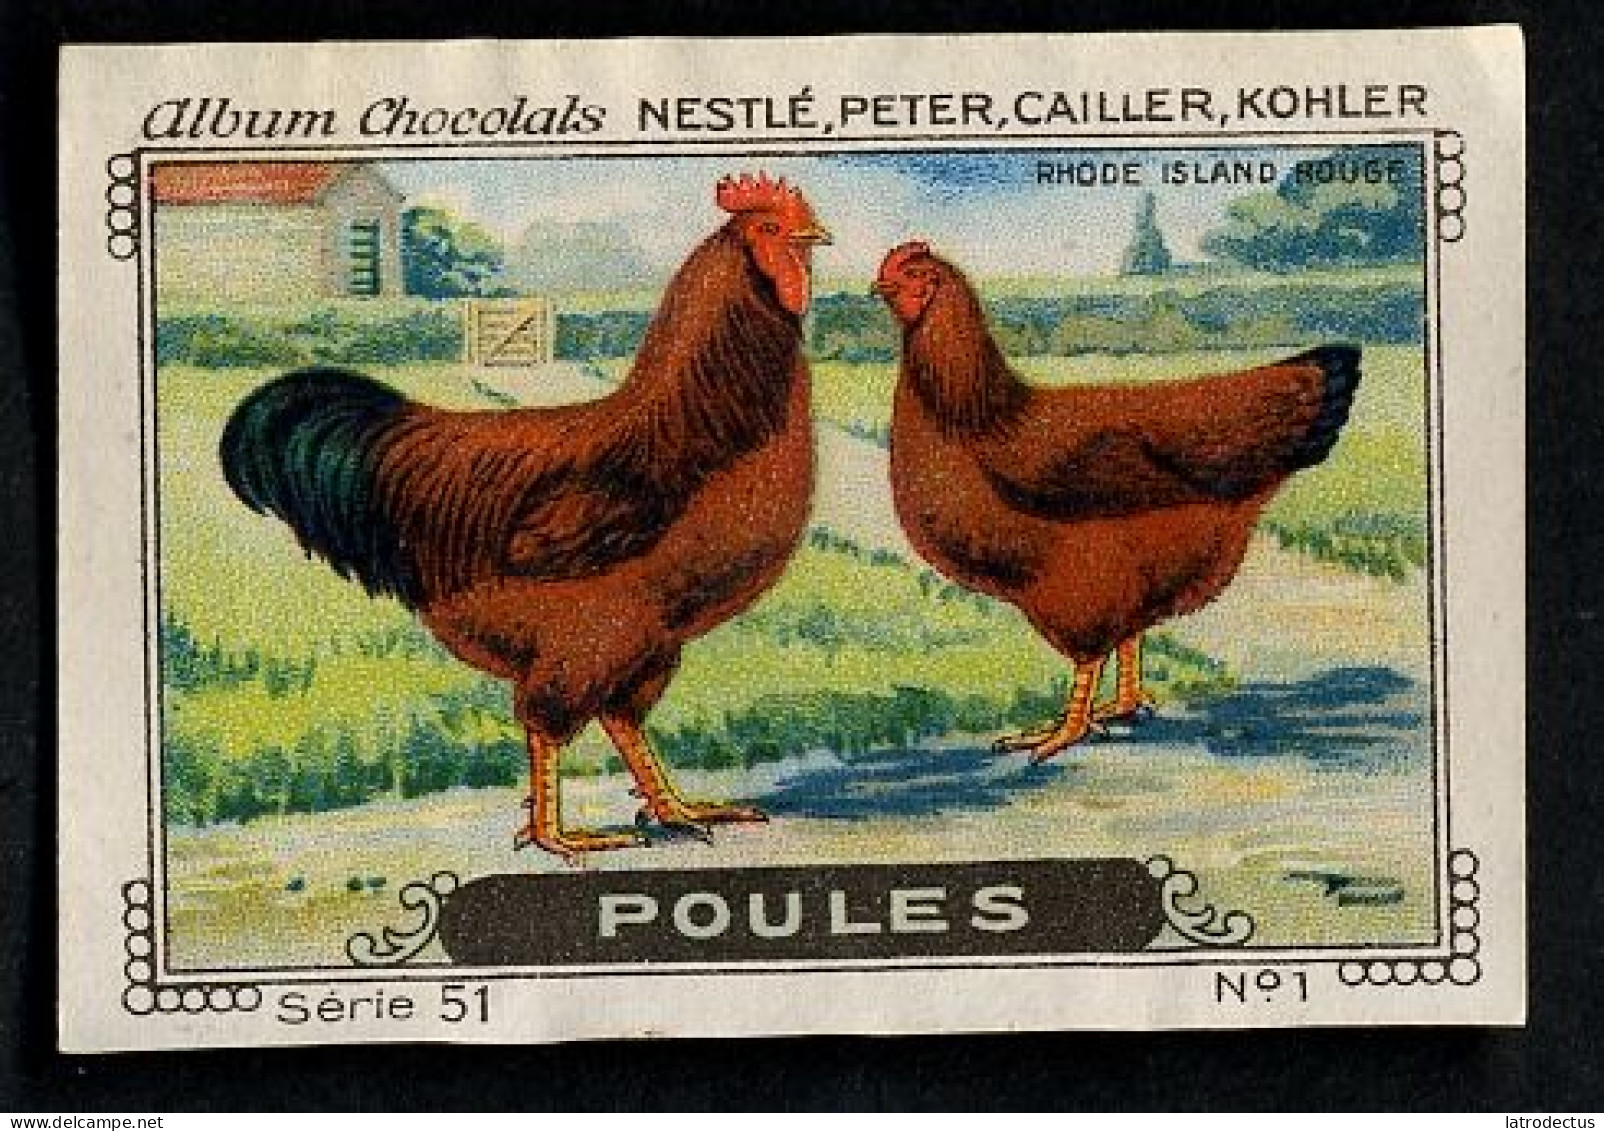 Nestlé - 51 - Poules, Chickens - 1 - Rhode Island Rouge - Nestlé